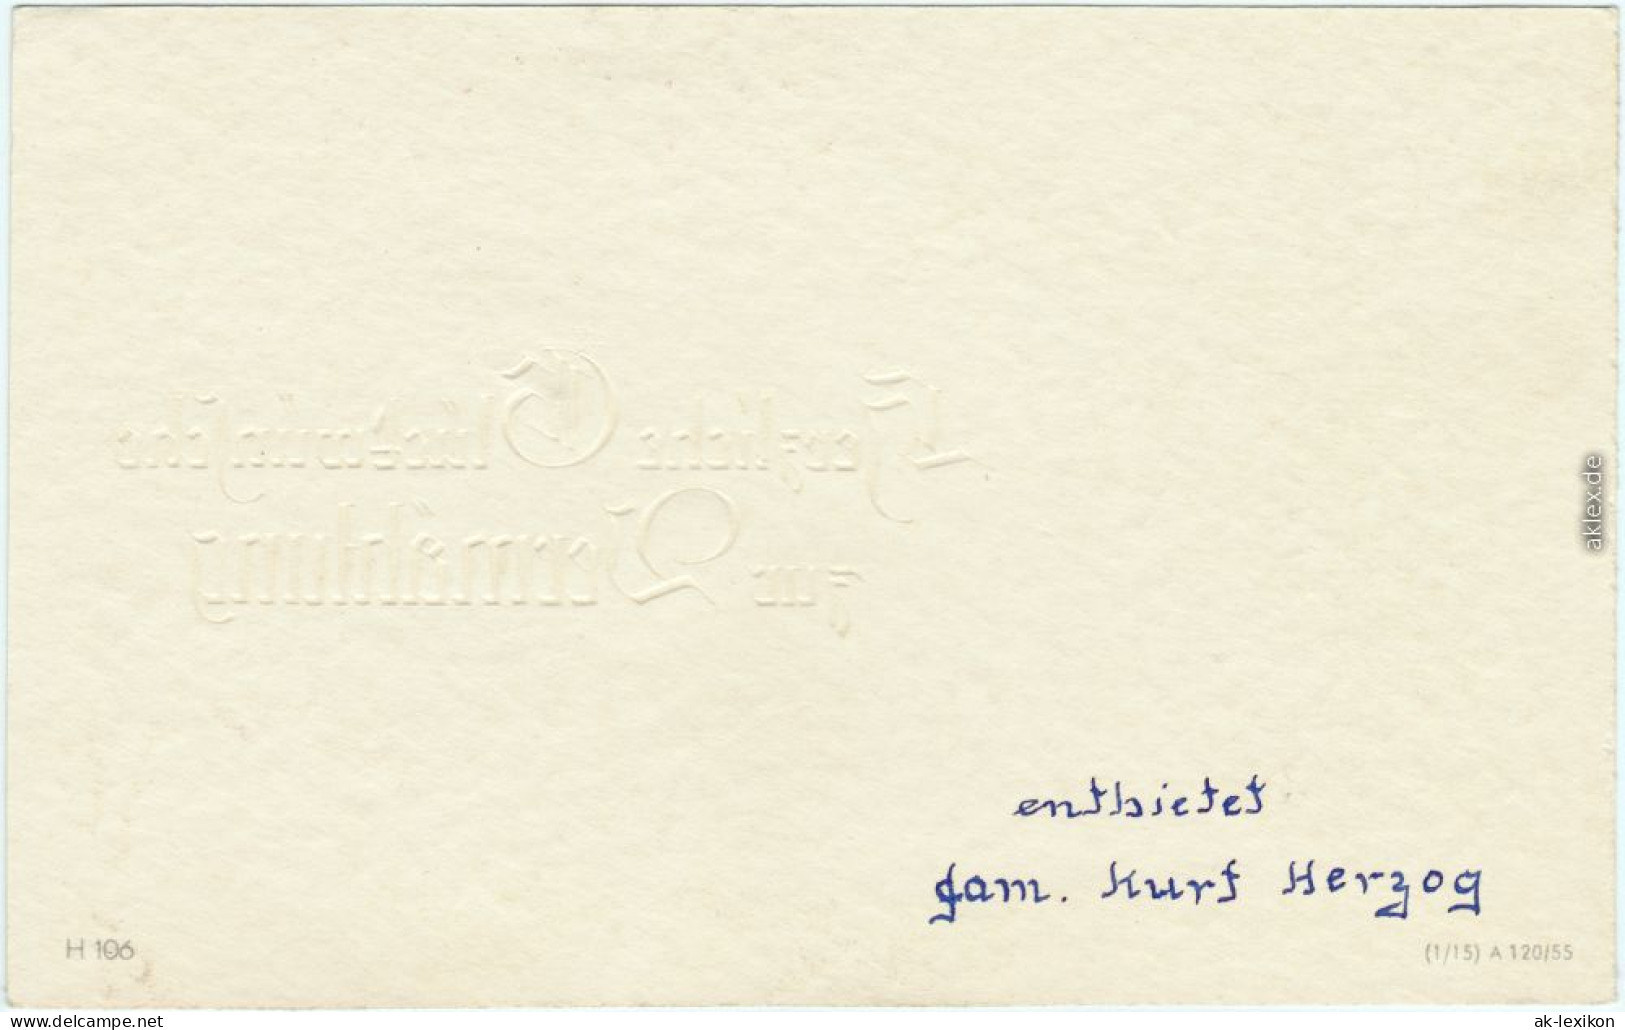  Herzliche Glückwünsche Zur Vermählung Hochzeit, Goldschrift 1922 Goldrand - Hochzeiten